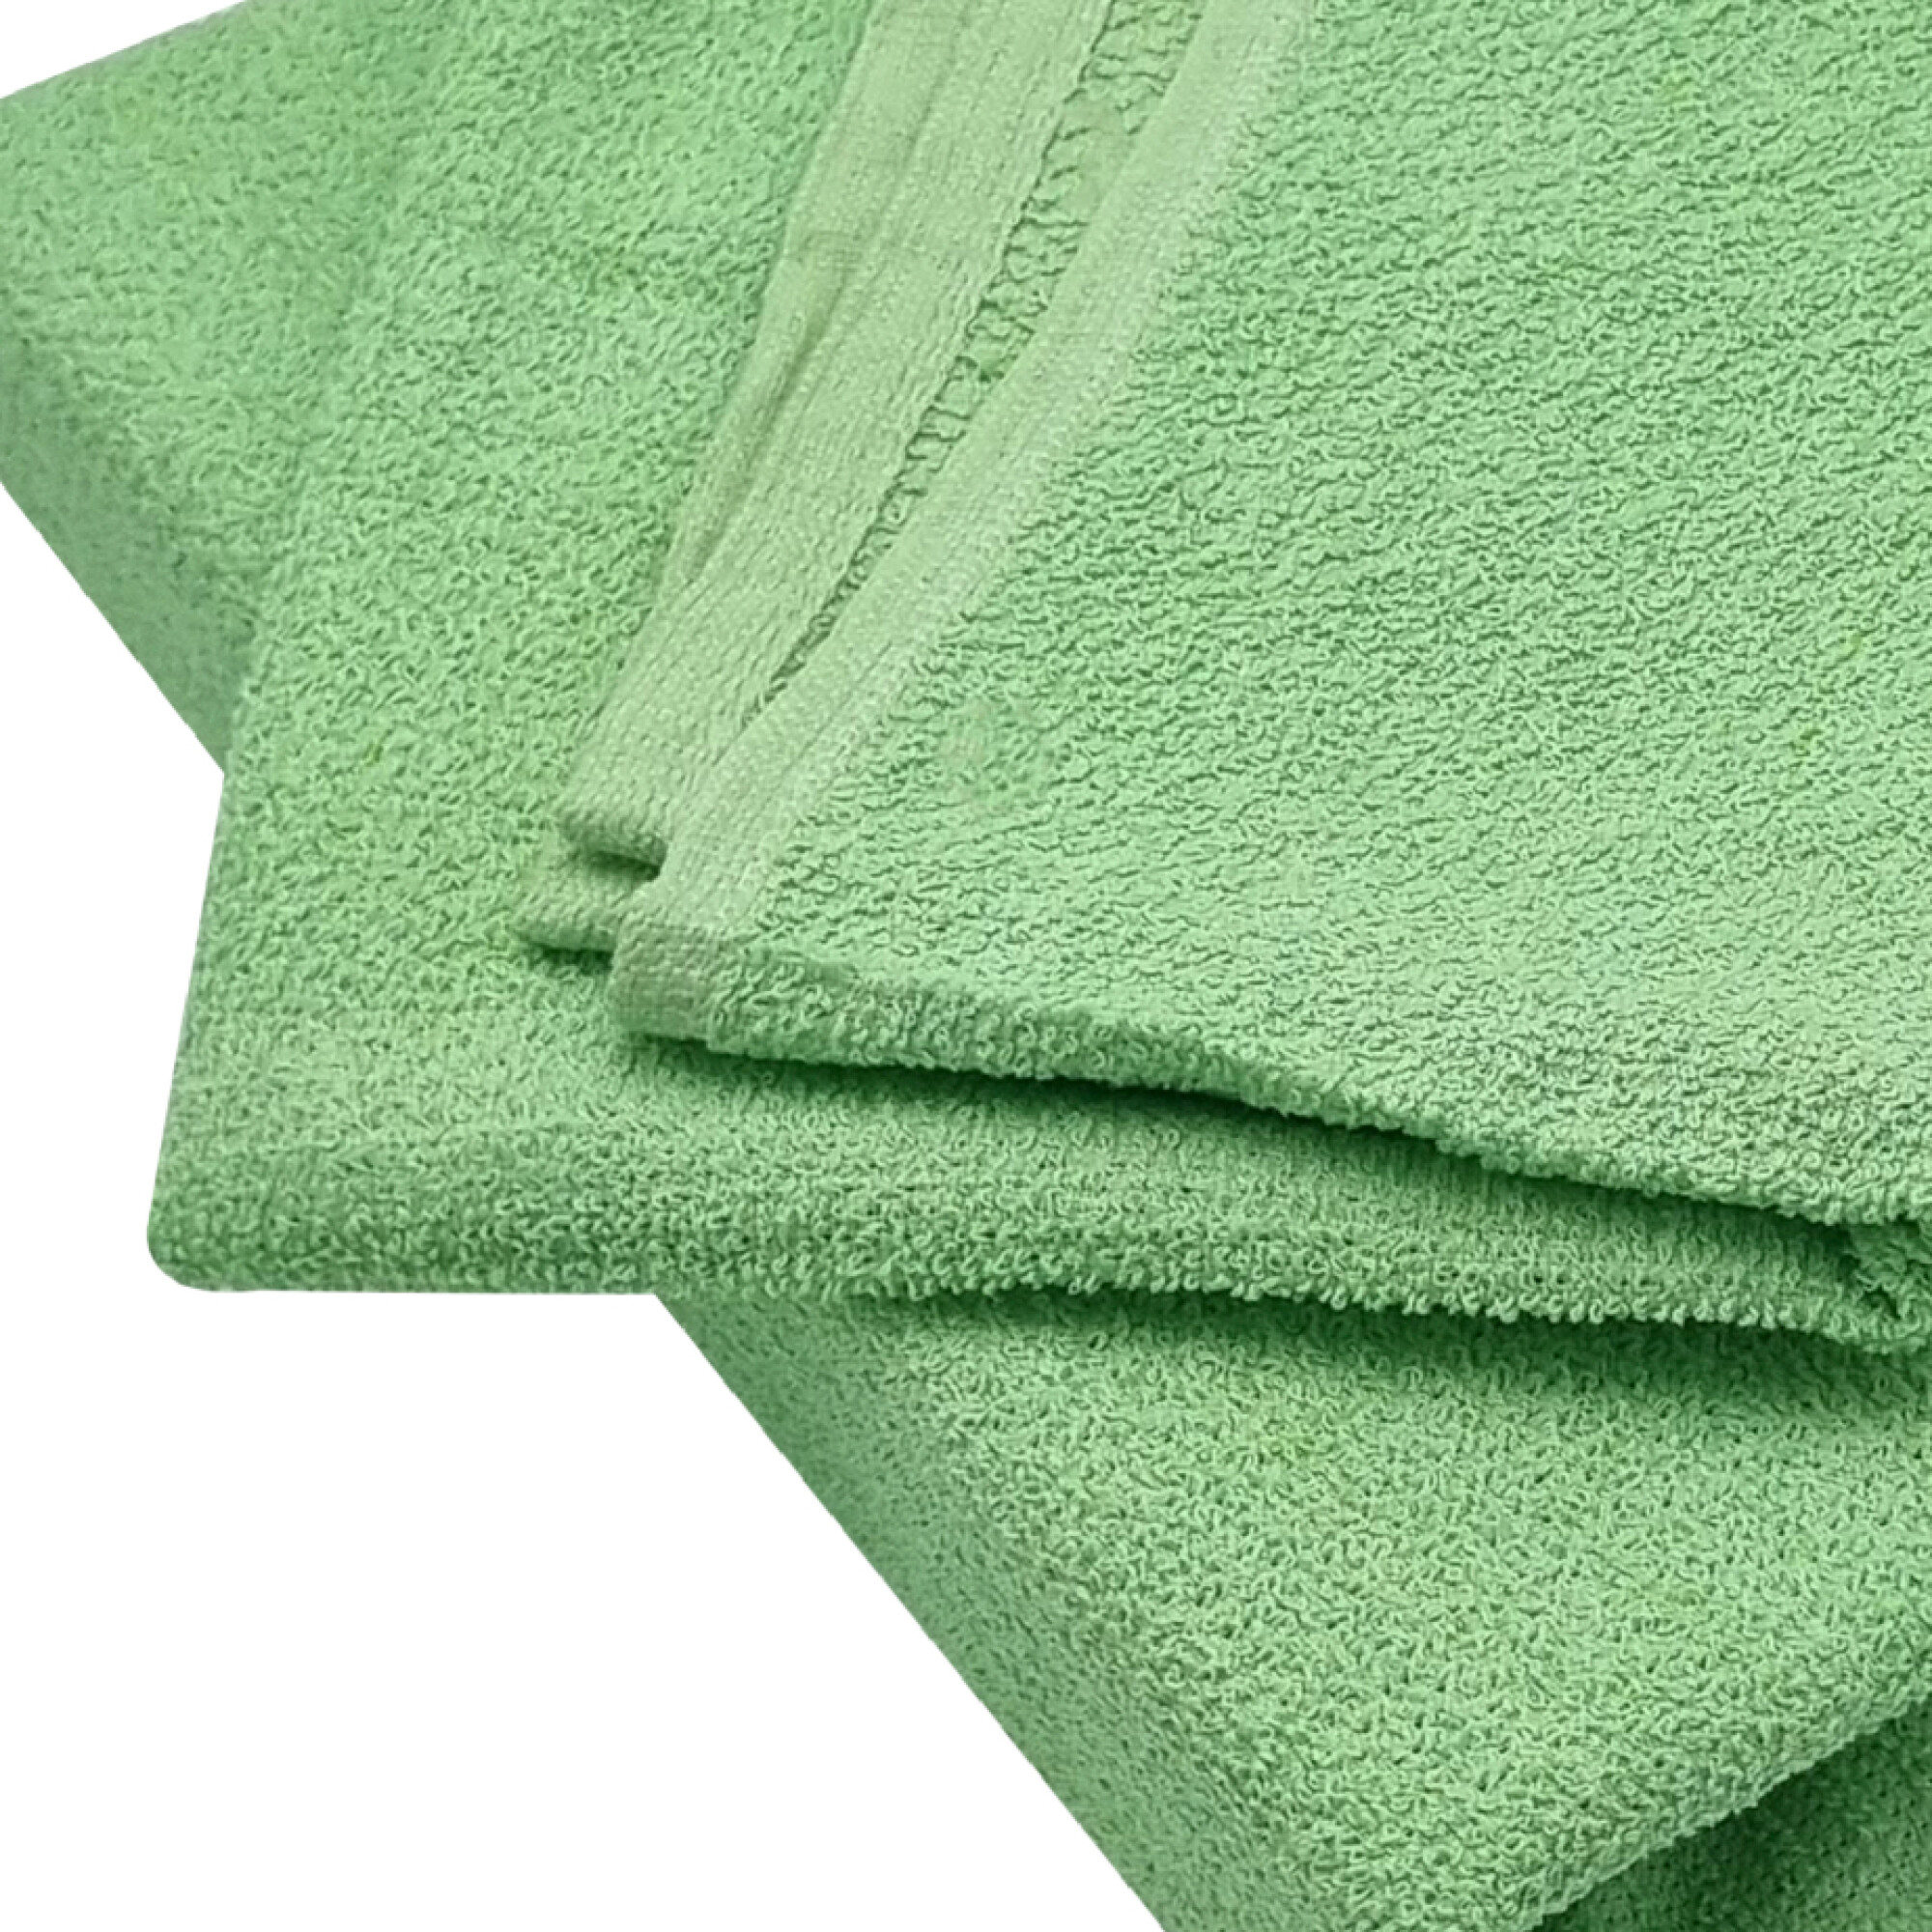 Toalla de baño verde, juegos de toallas verdes, toallas de baño de algodón,  juego de toallas de baño verde, toalla verde, toallas con monograma, juego  de toallas para niños -  México